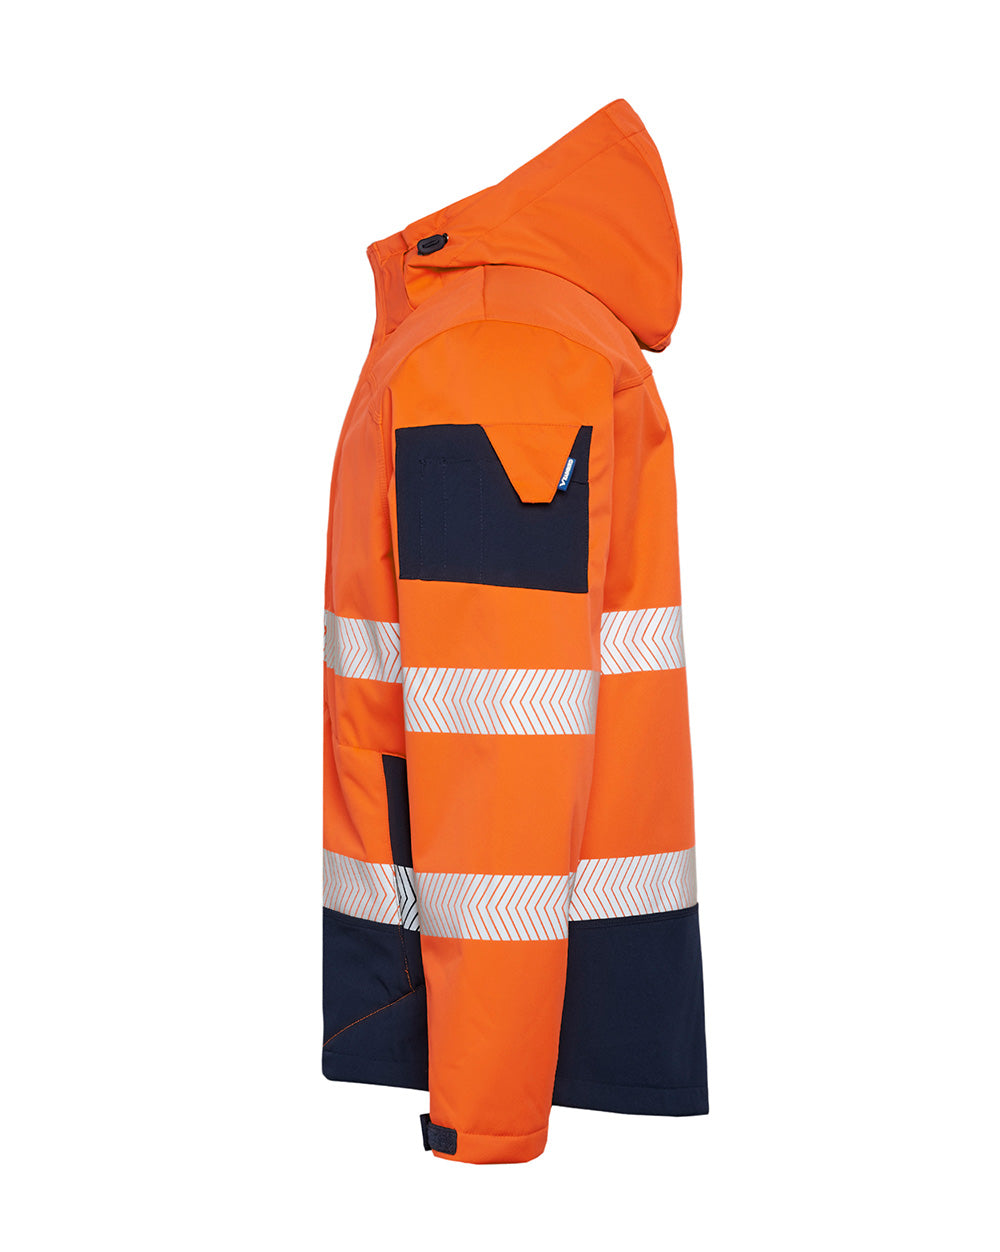 Jones Hi-Vis Softshell Coat in Fluoro Orange & Navy